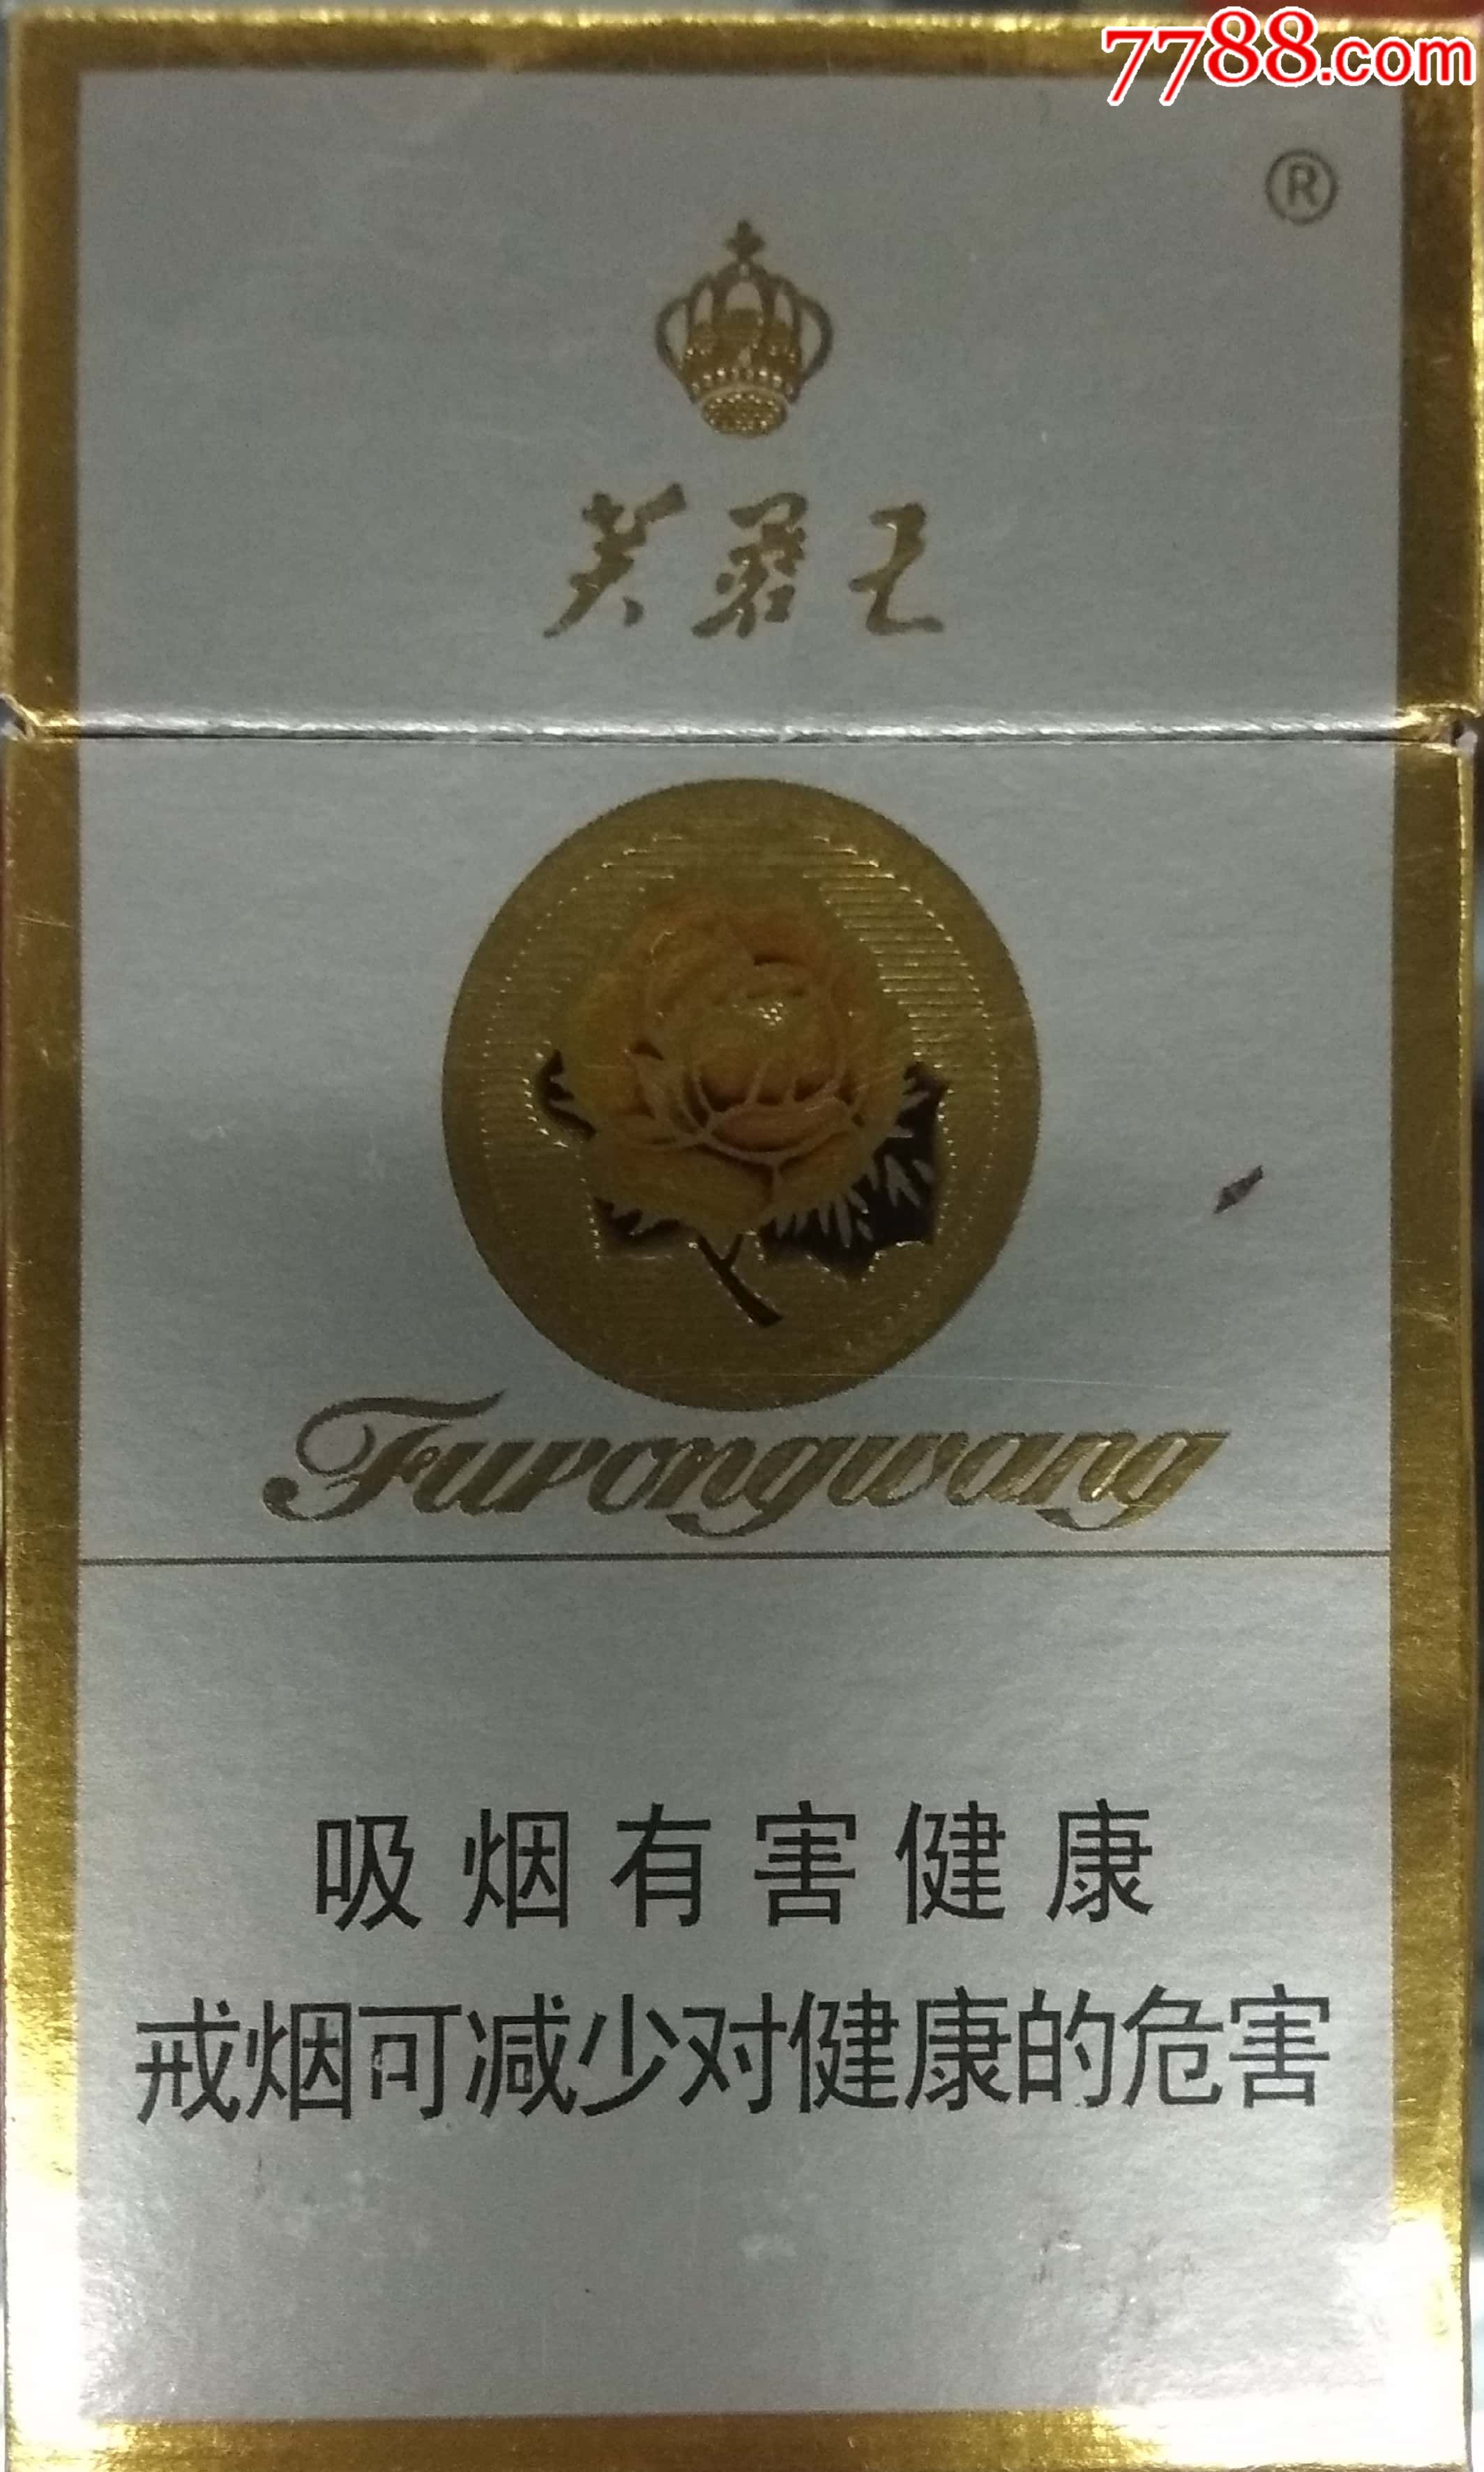 香烟芙蓉王图片